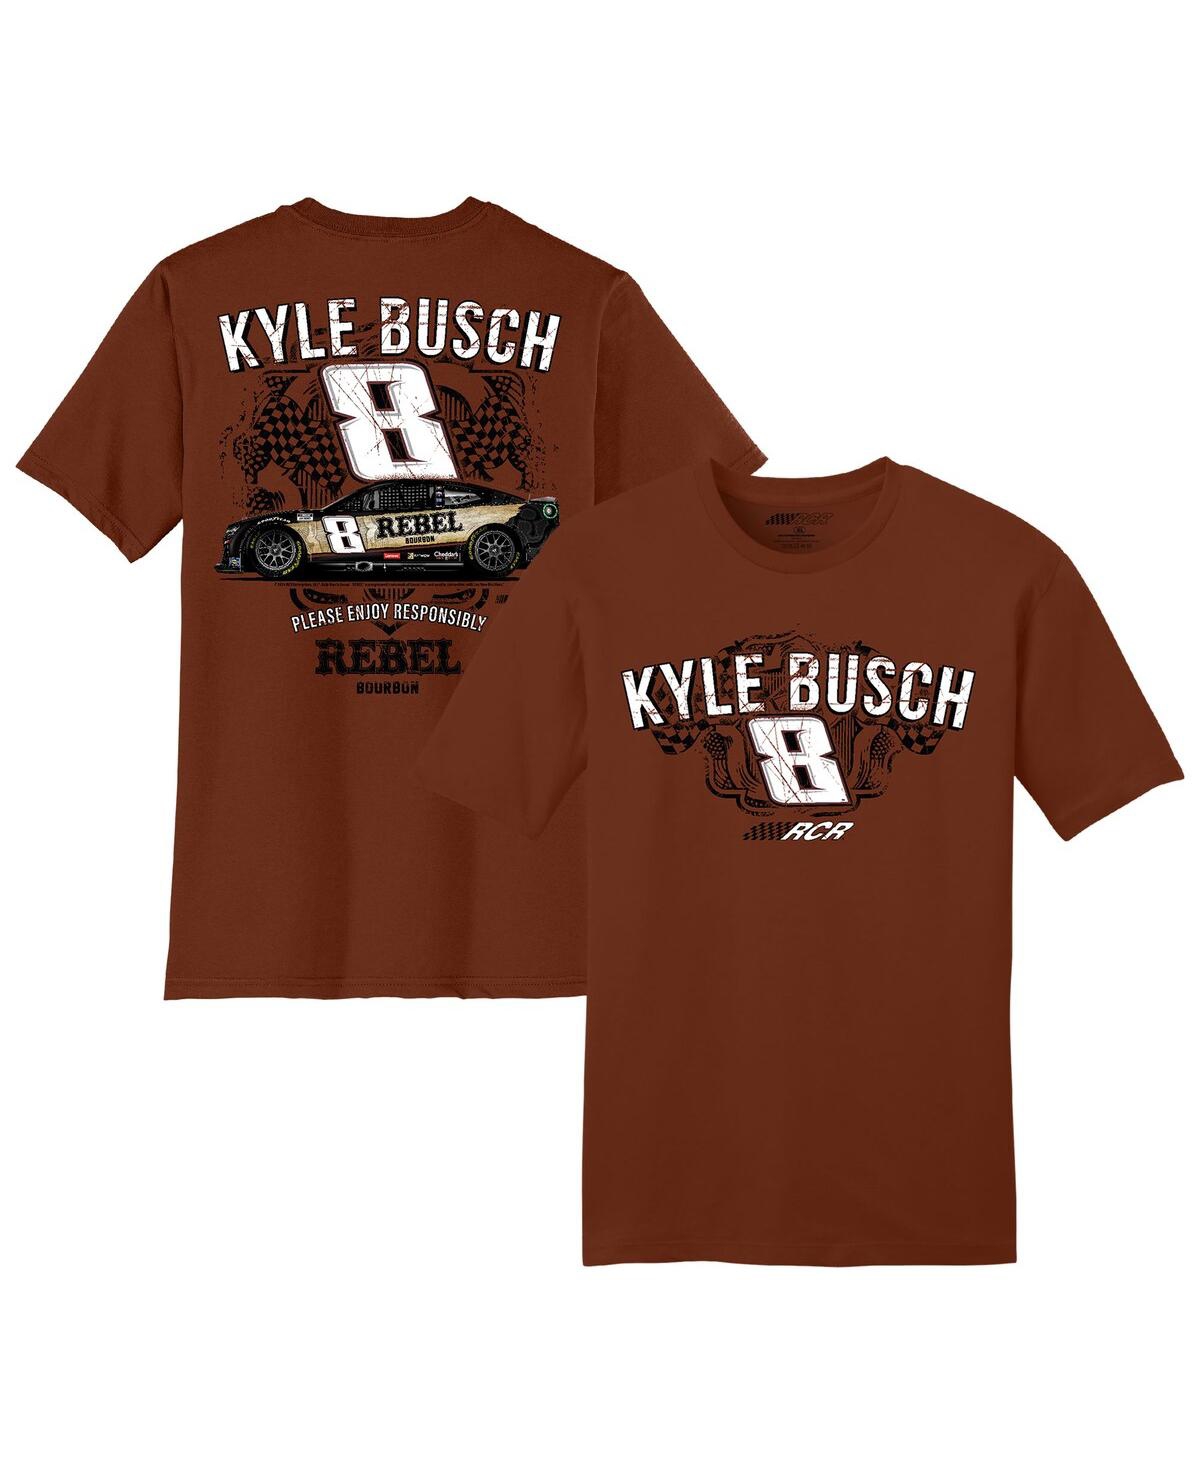 Men's Richard Childress Racing Team Collection Brown Kyle Busch Rebel Bourbon Car T-shirt - Brown